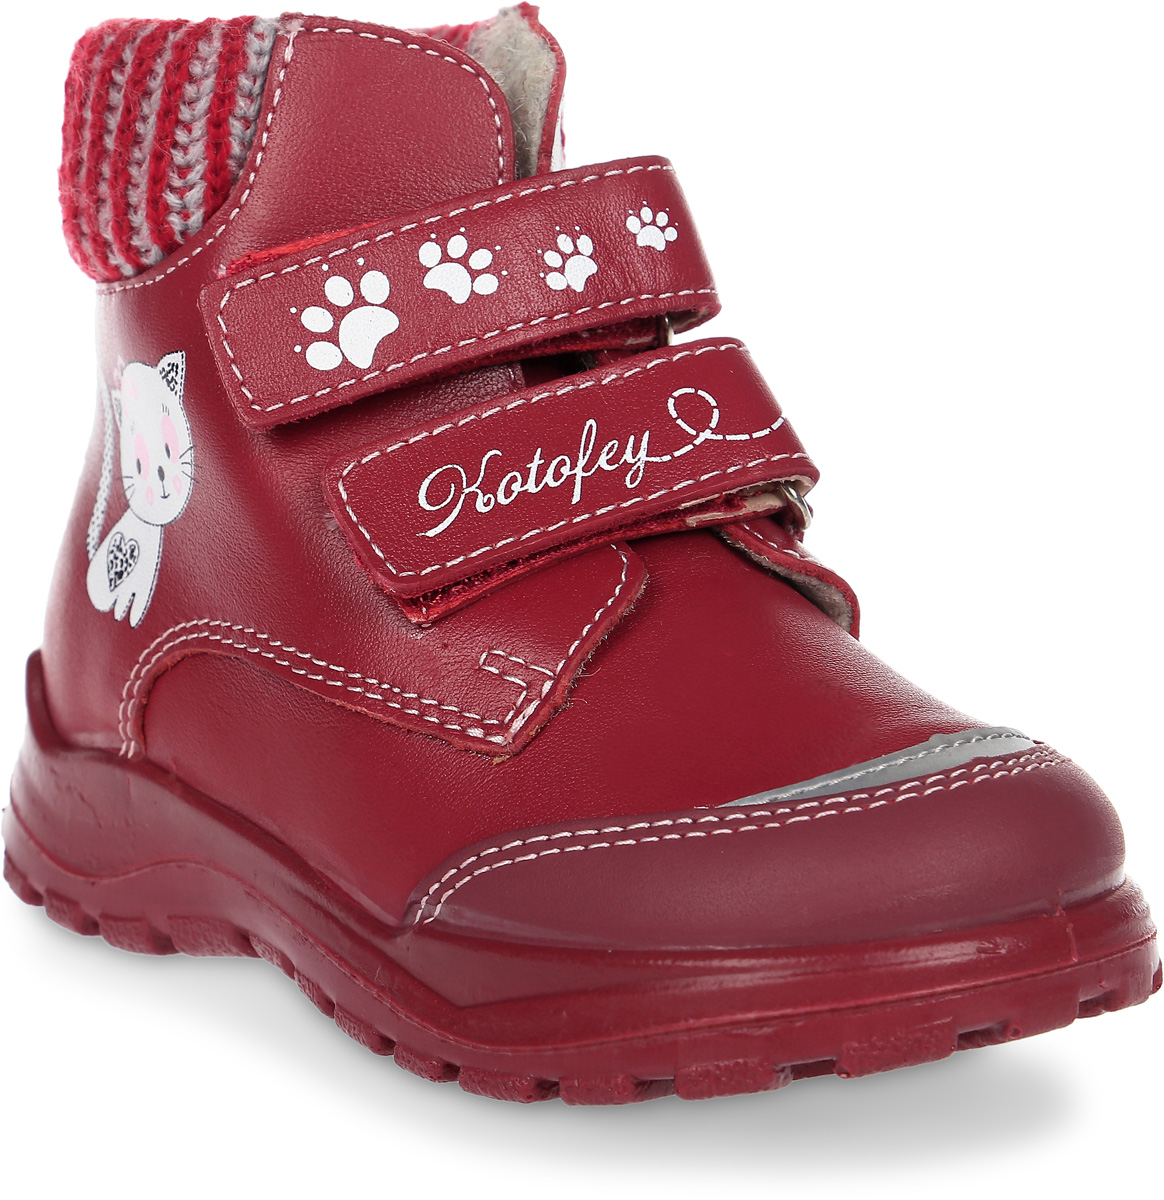 Ботинки для девочки Котофей, цвет: бордовый. 152142-31. Размер 24